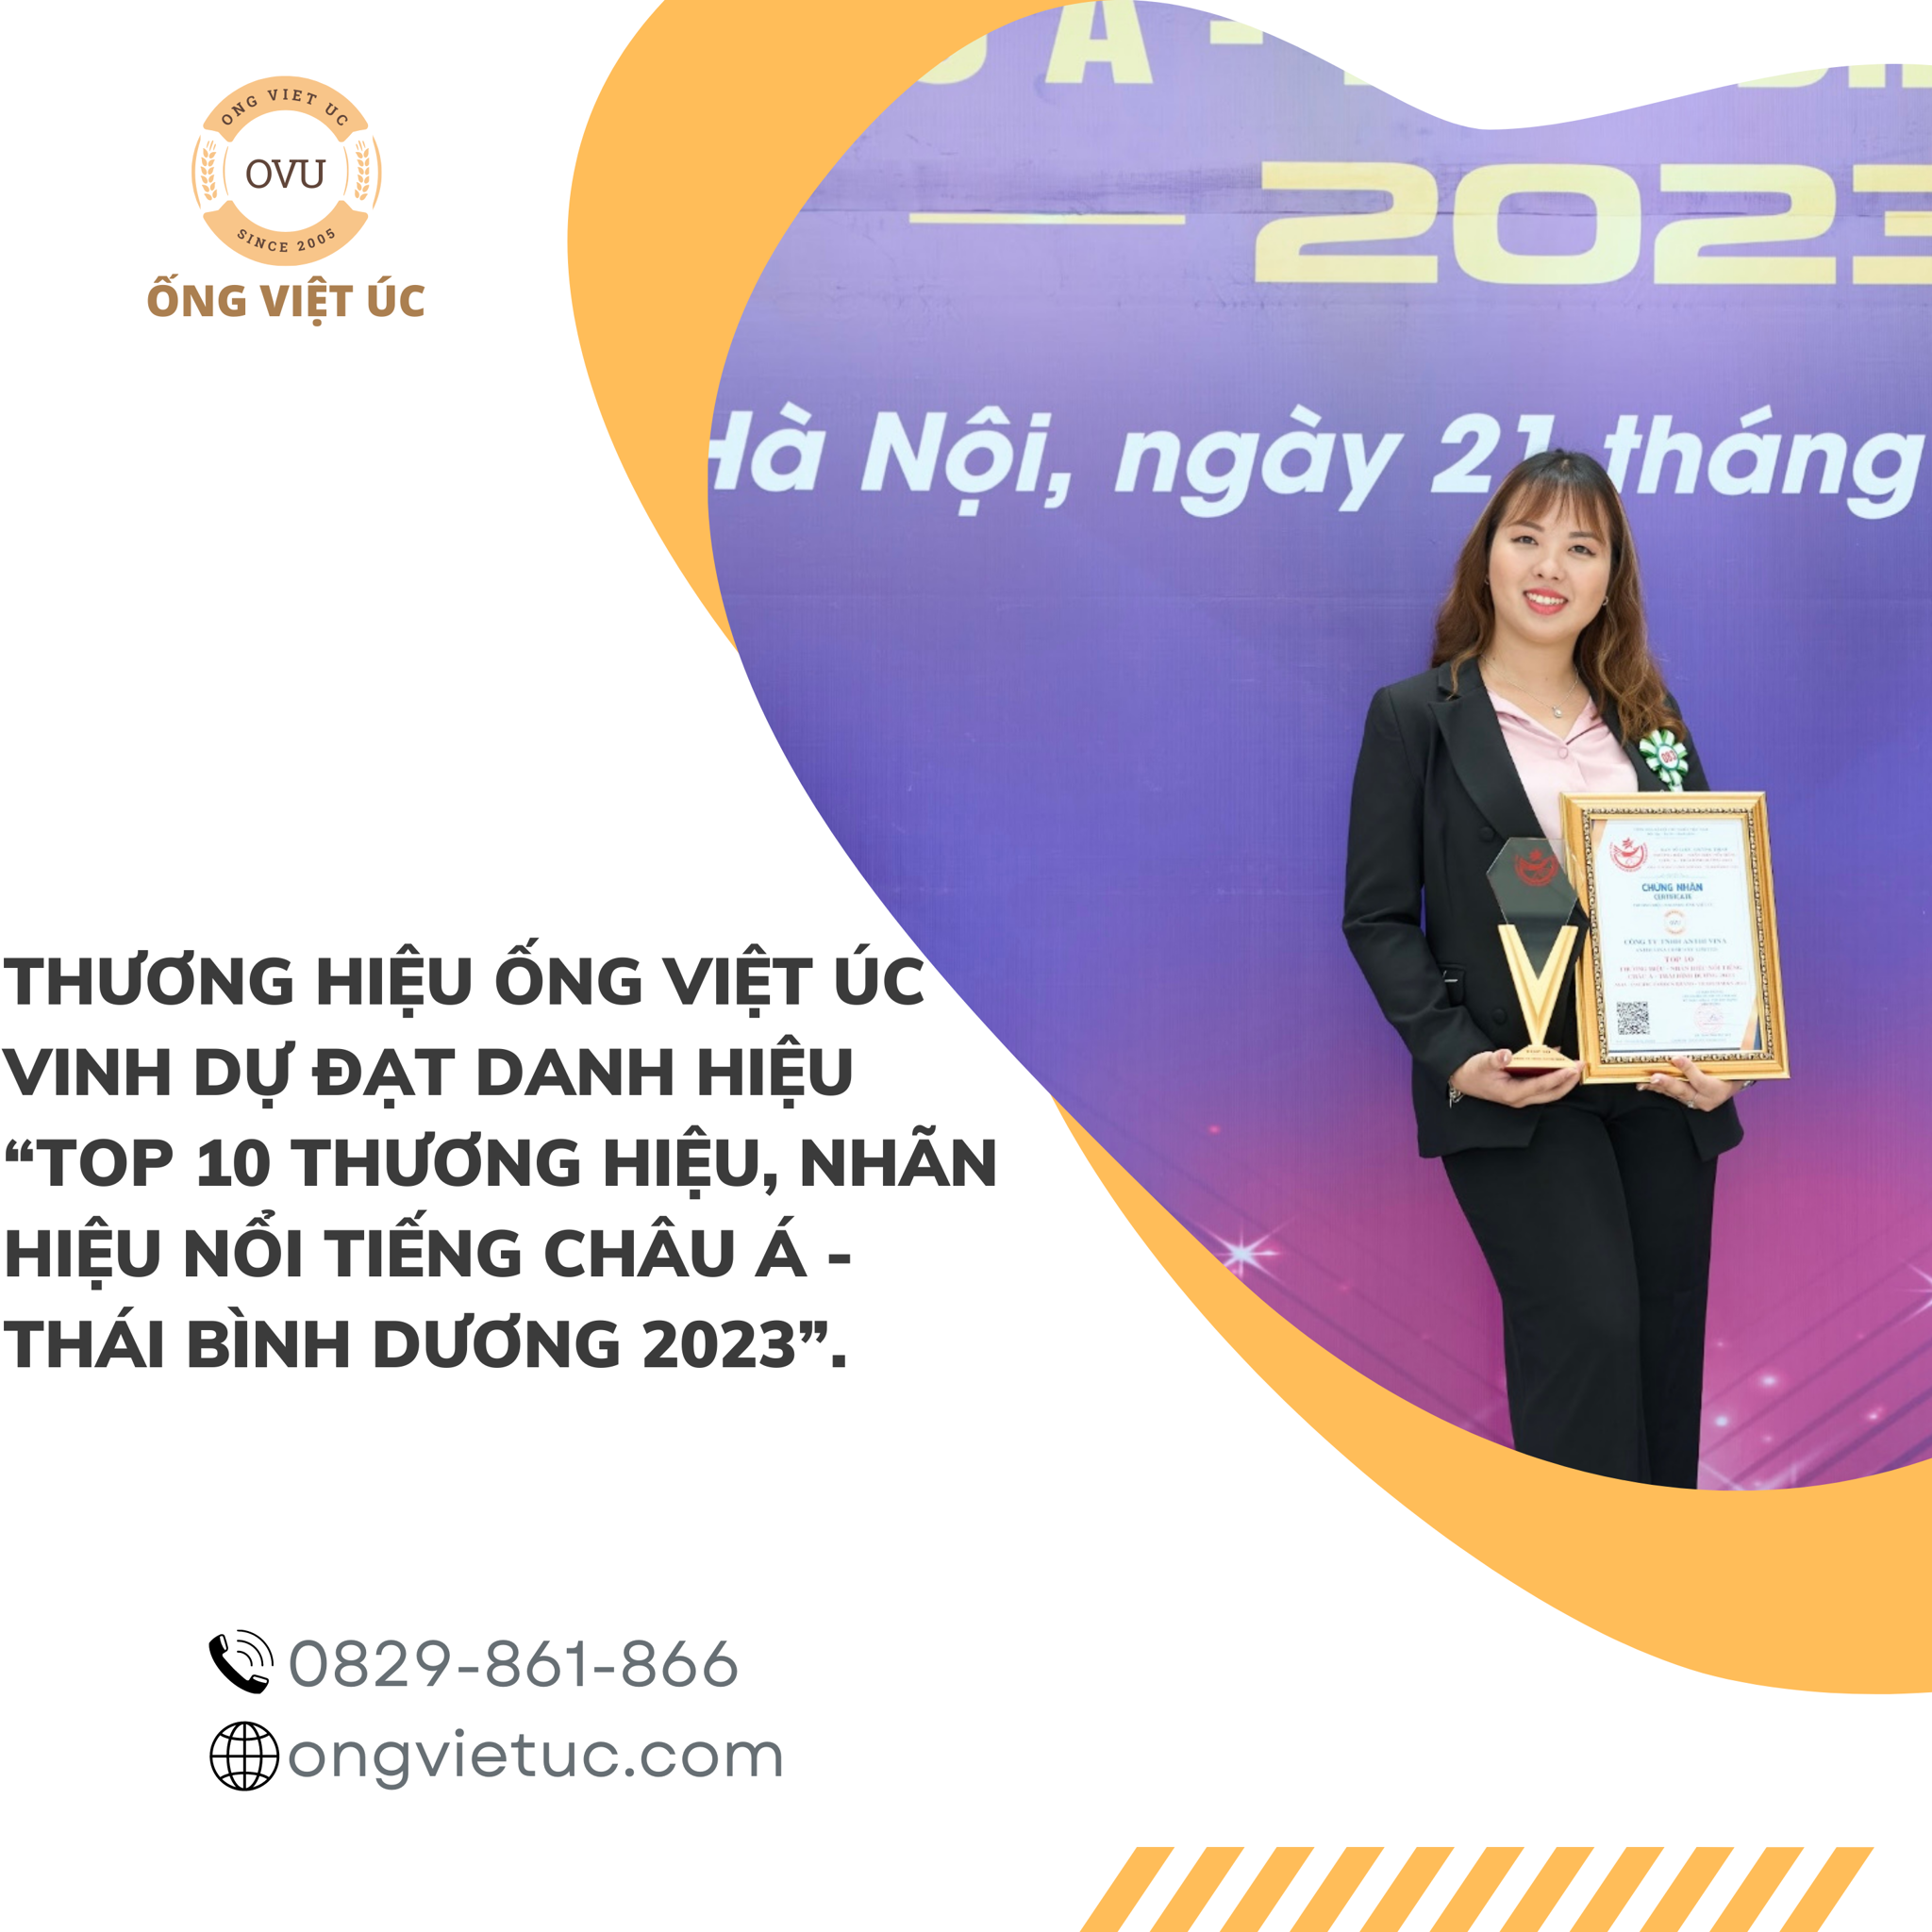 Thương hiệu Ống Việt Úc vinh dự đạt danh hiệu “Top 10 thương hiệu, nhãn hiệu nổi tiếng Châu Á - Thái Bình Dương 2023”.